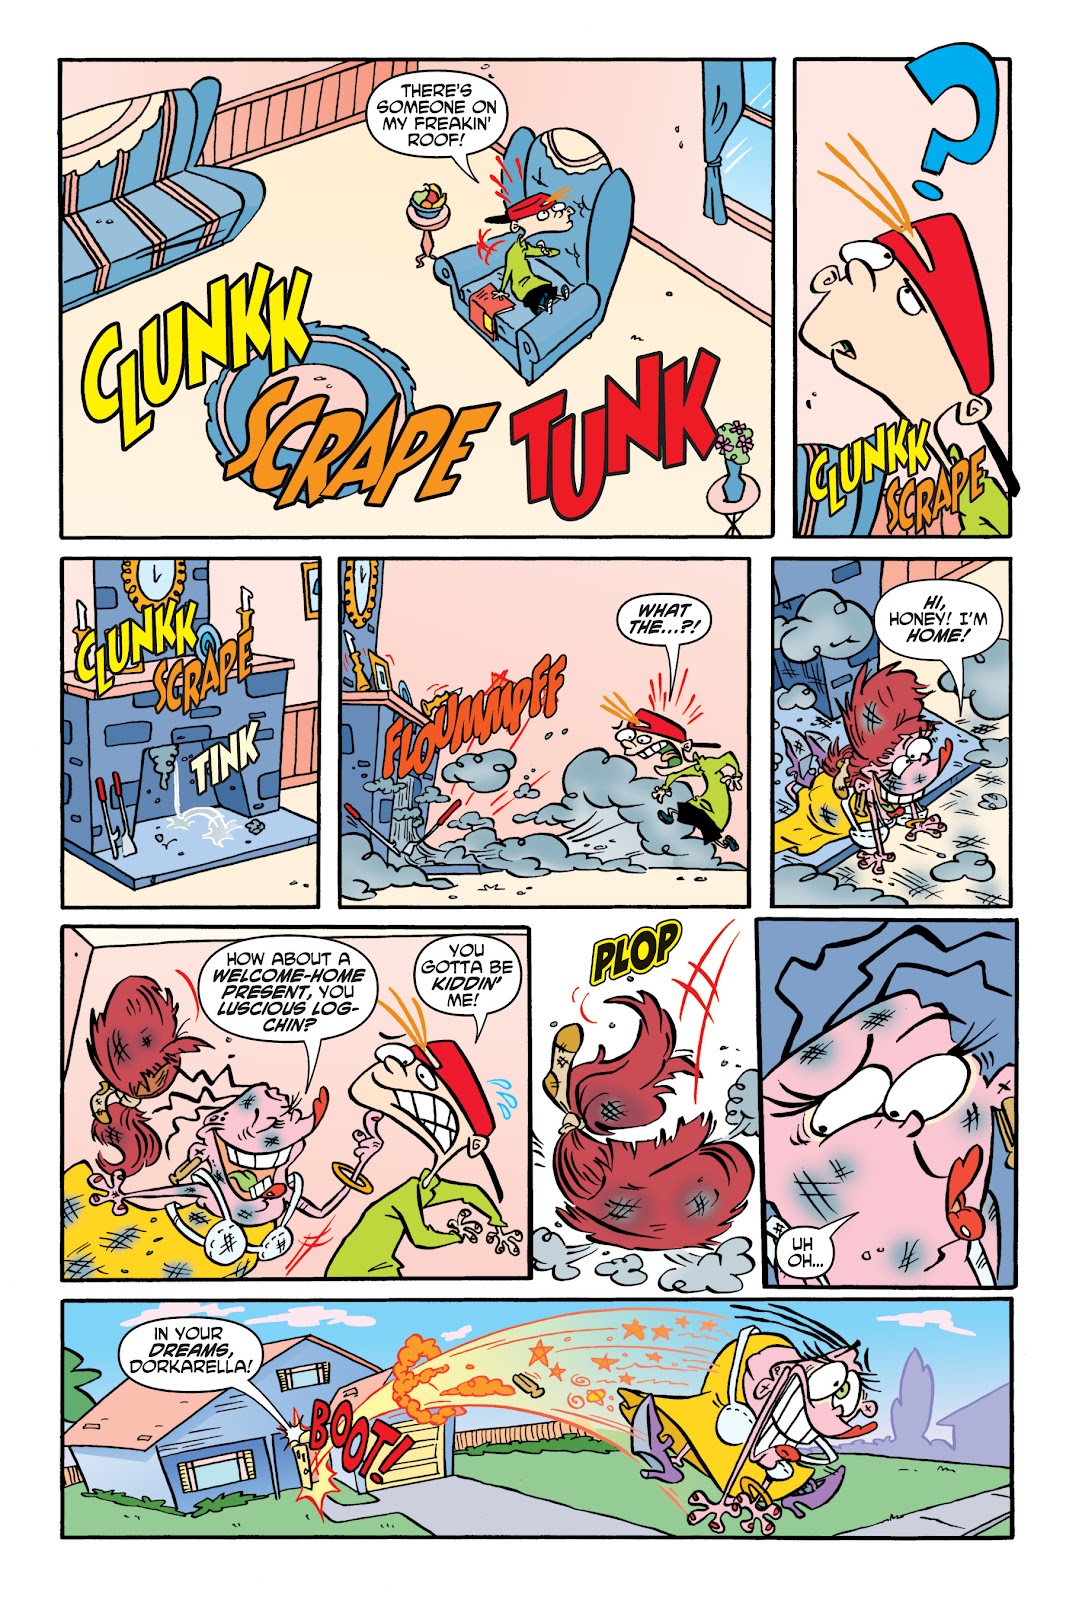 Cartoon Network All-Stars Omnibus, Ed, Edd n Eddy